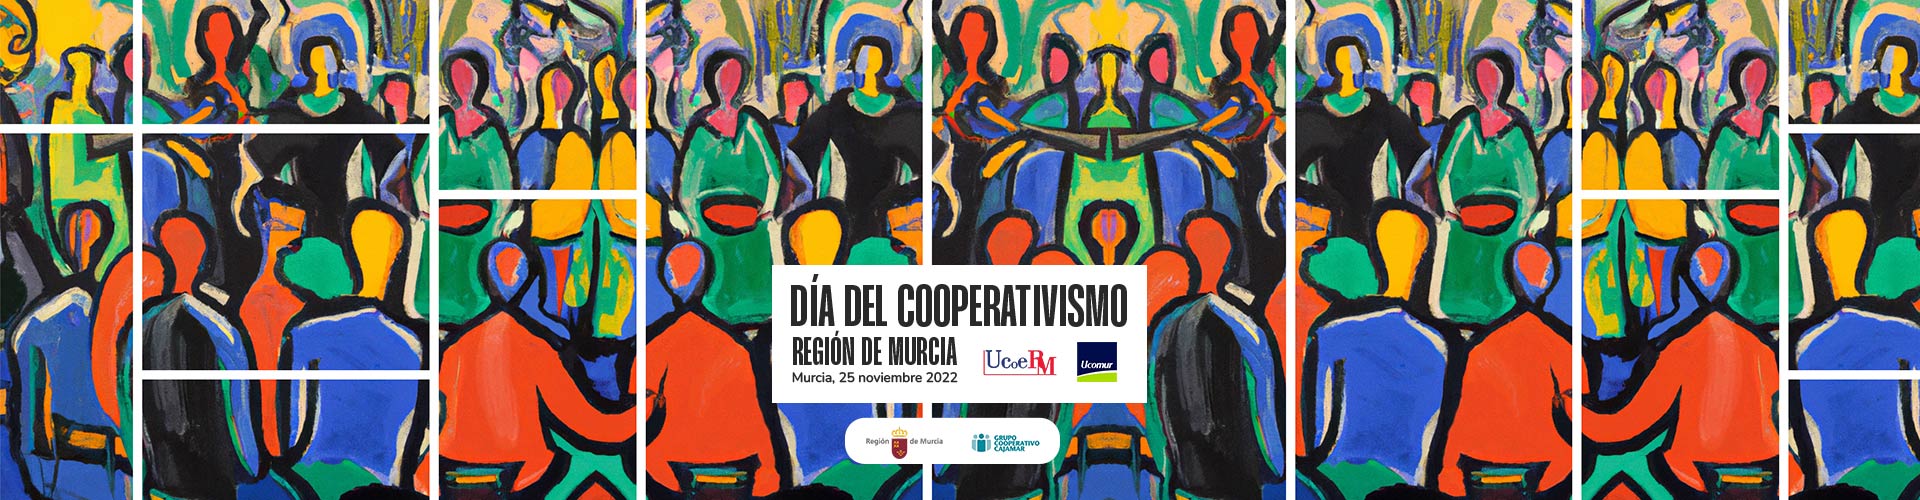 Ucomur y Ucoerm celebran el 25 de noviembre de forma conjunta el Día del Cooperativismo regional